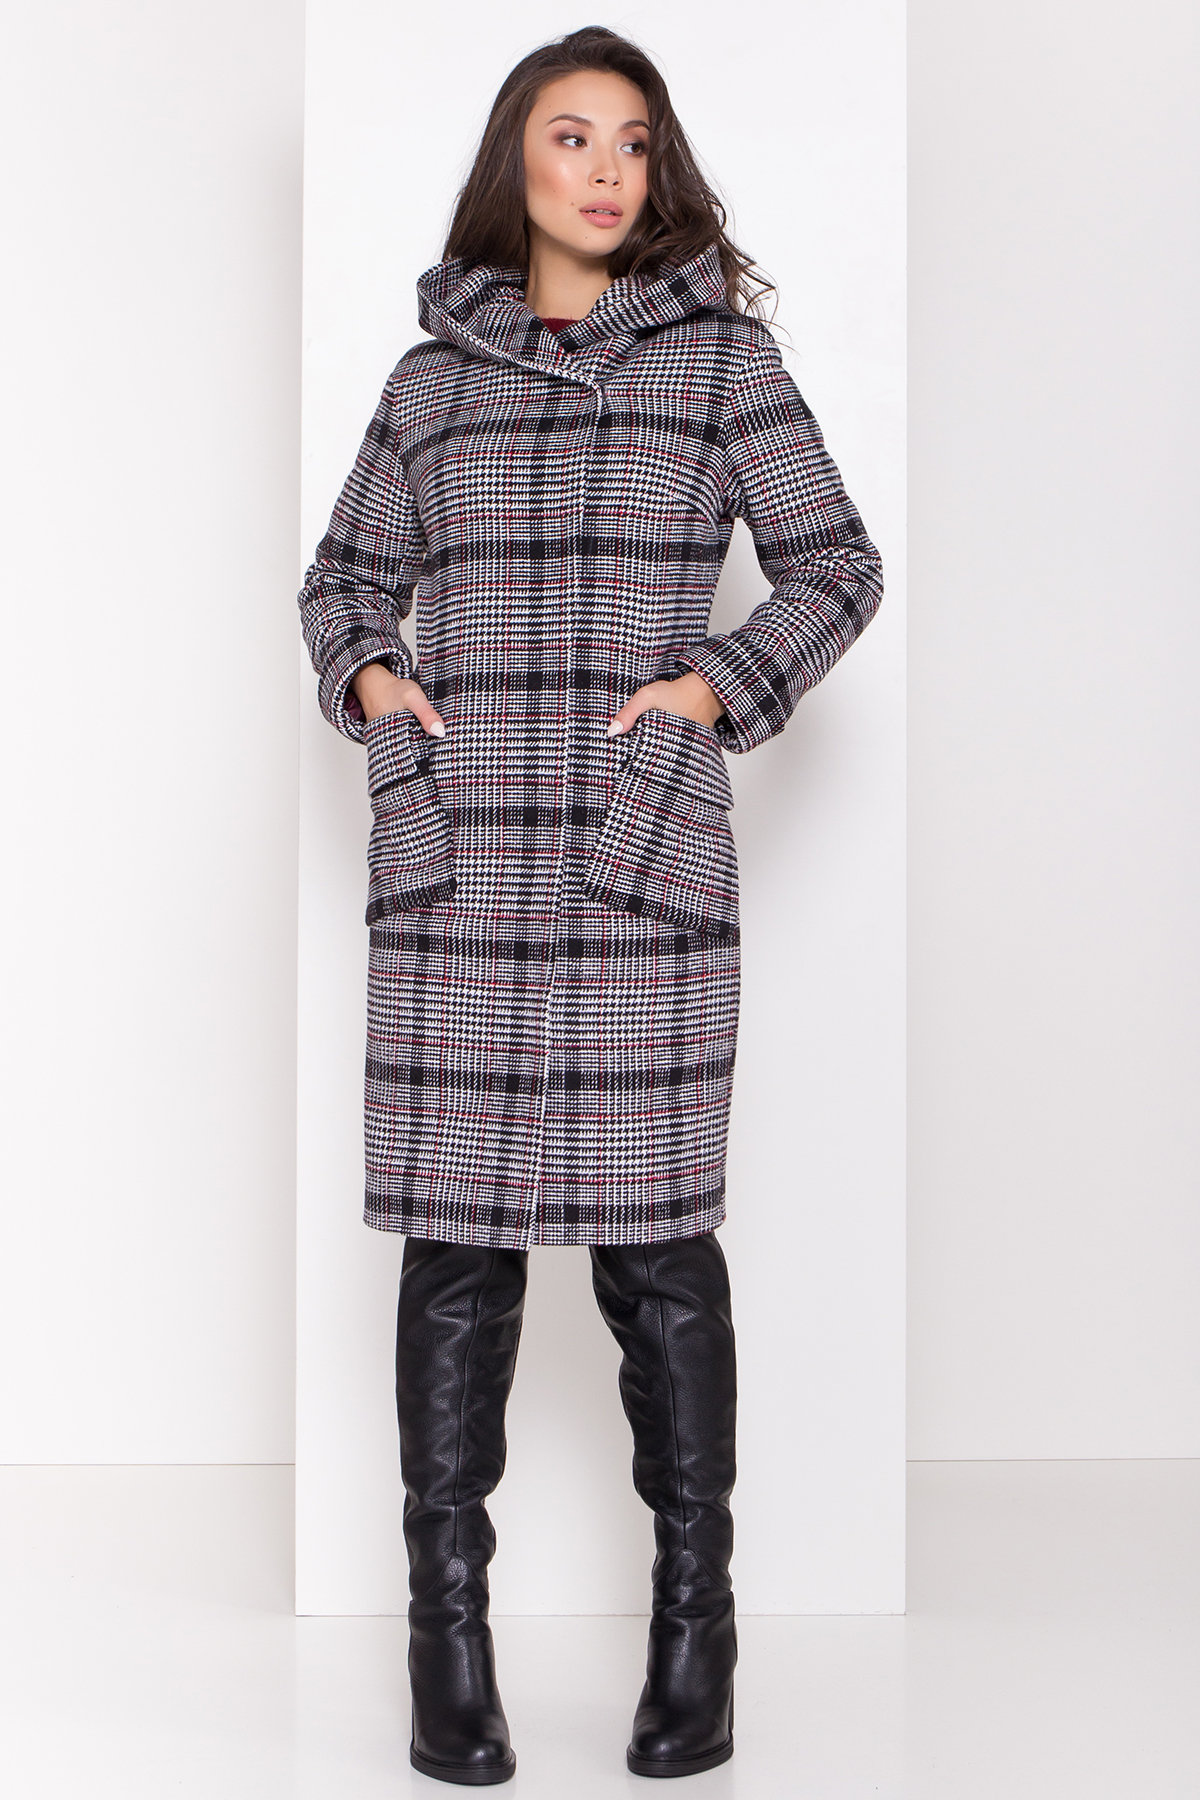 Зимнее пальто в стильную клетку Анджи 8276 АРТ. 44386 Цвет: Клетка кр черн/бел/кр - фото 3, интернет магазин tm-modus.ru